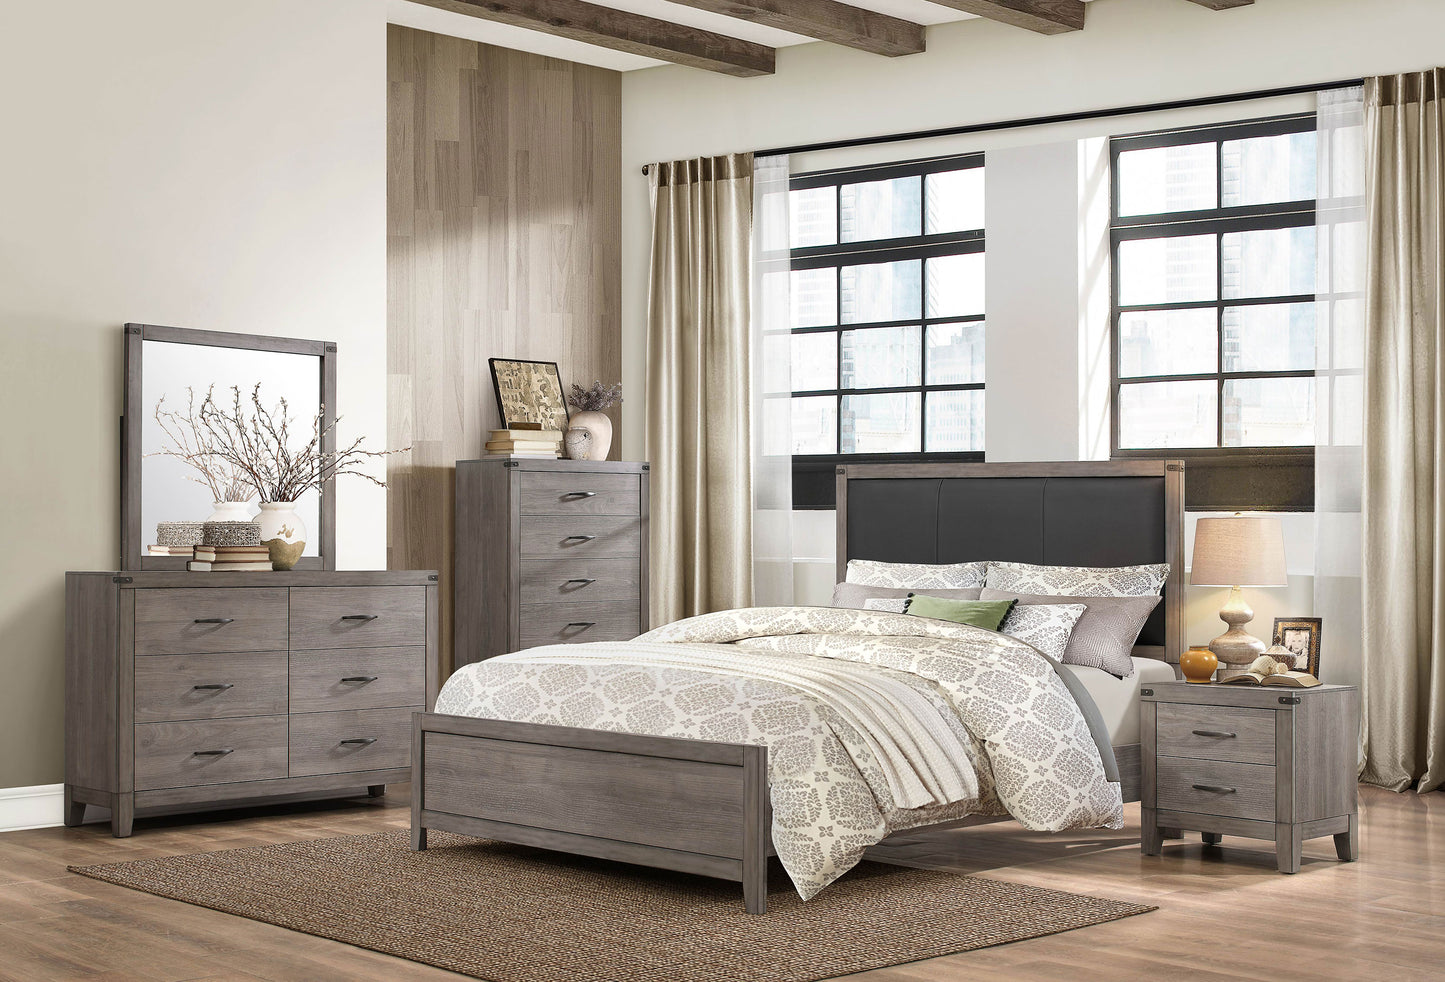 Walen Industrial 4PC Bedroom Set Queen Bed, Dresser, Mirror, Nightstand in Grey